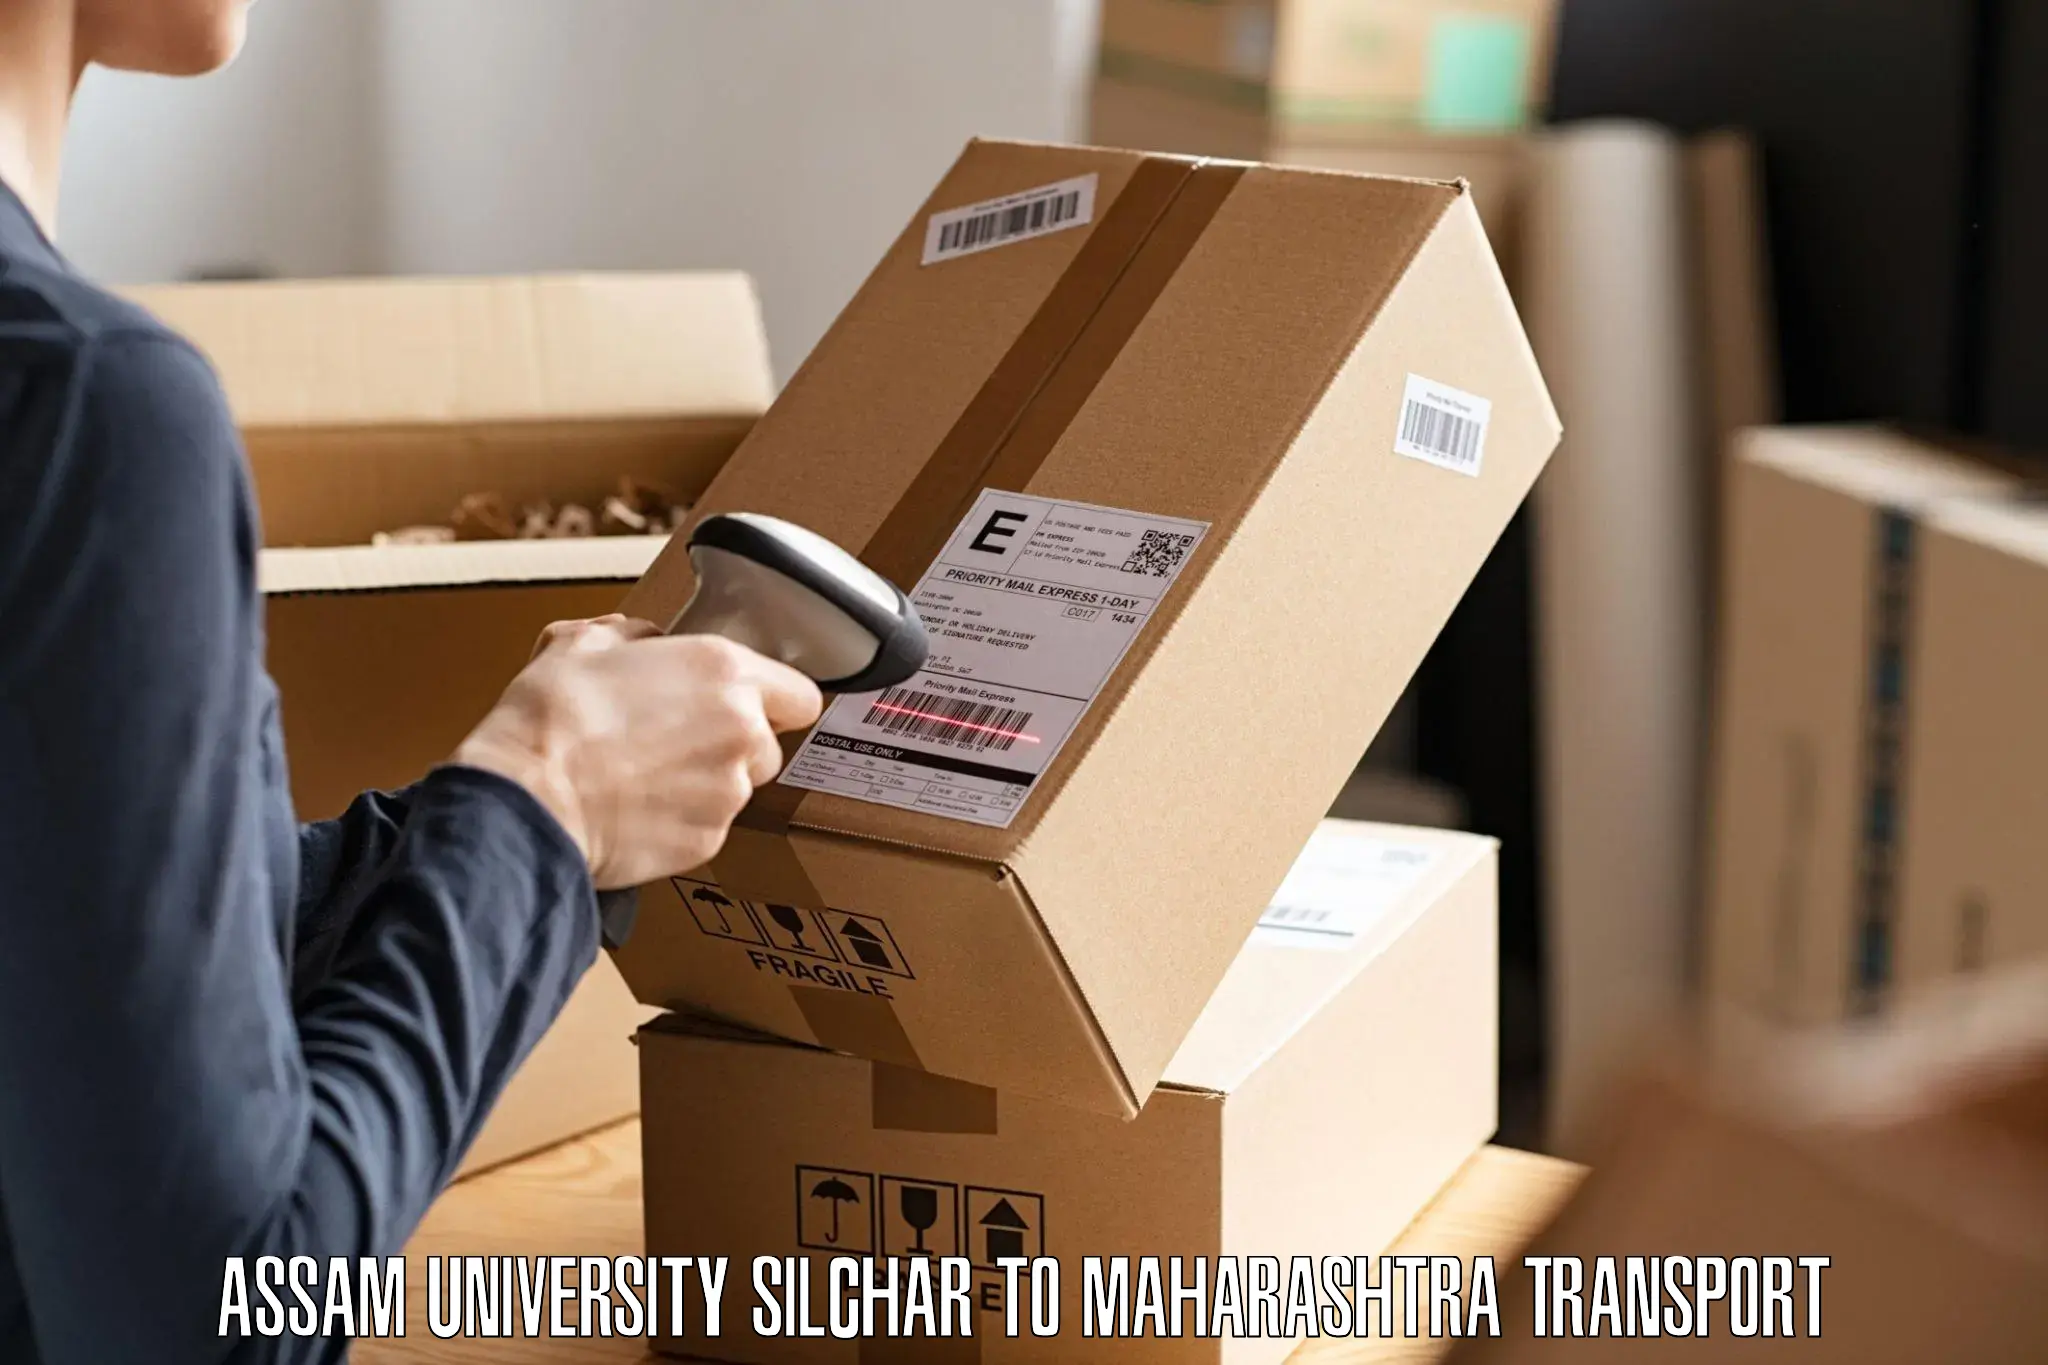 Goods delivery service Assam University Silchar to Jamner